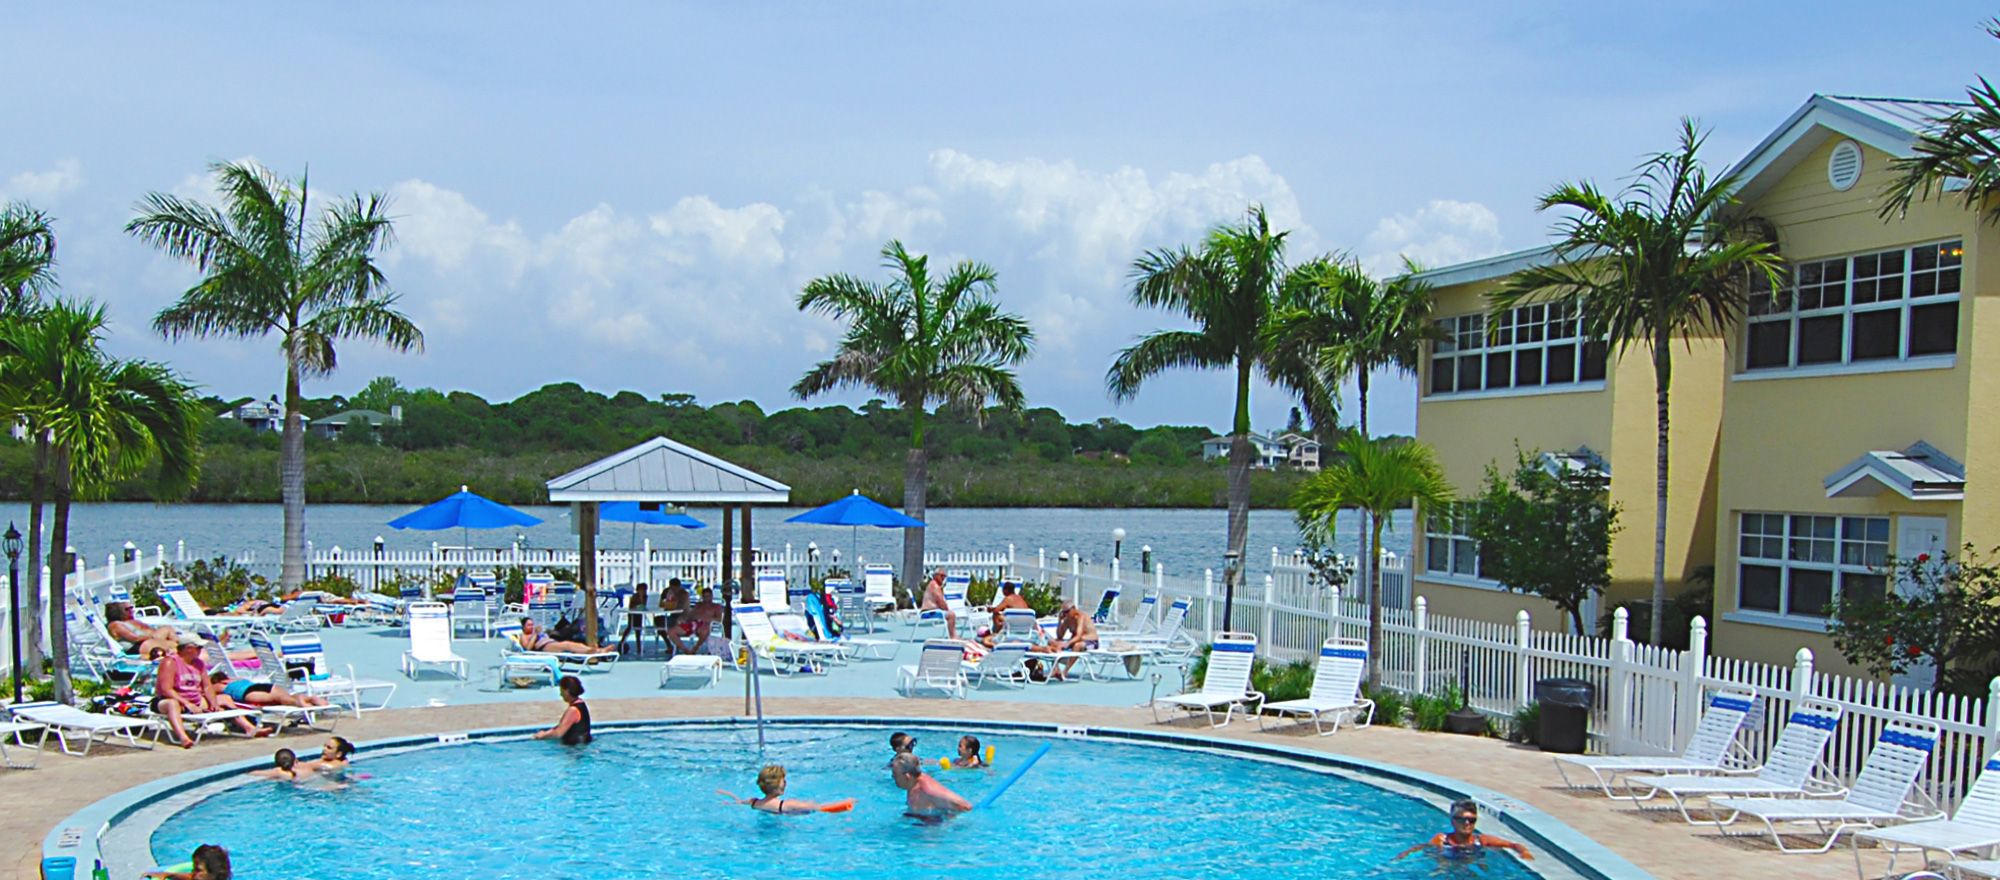 Pool - Barefoot Beach Resort